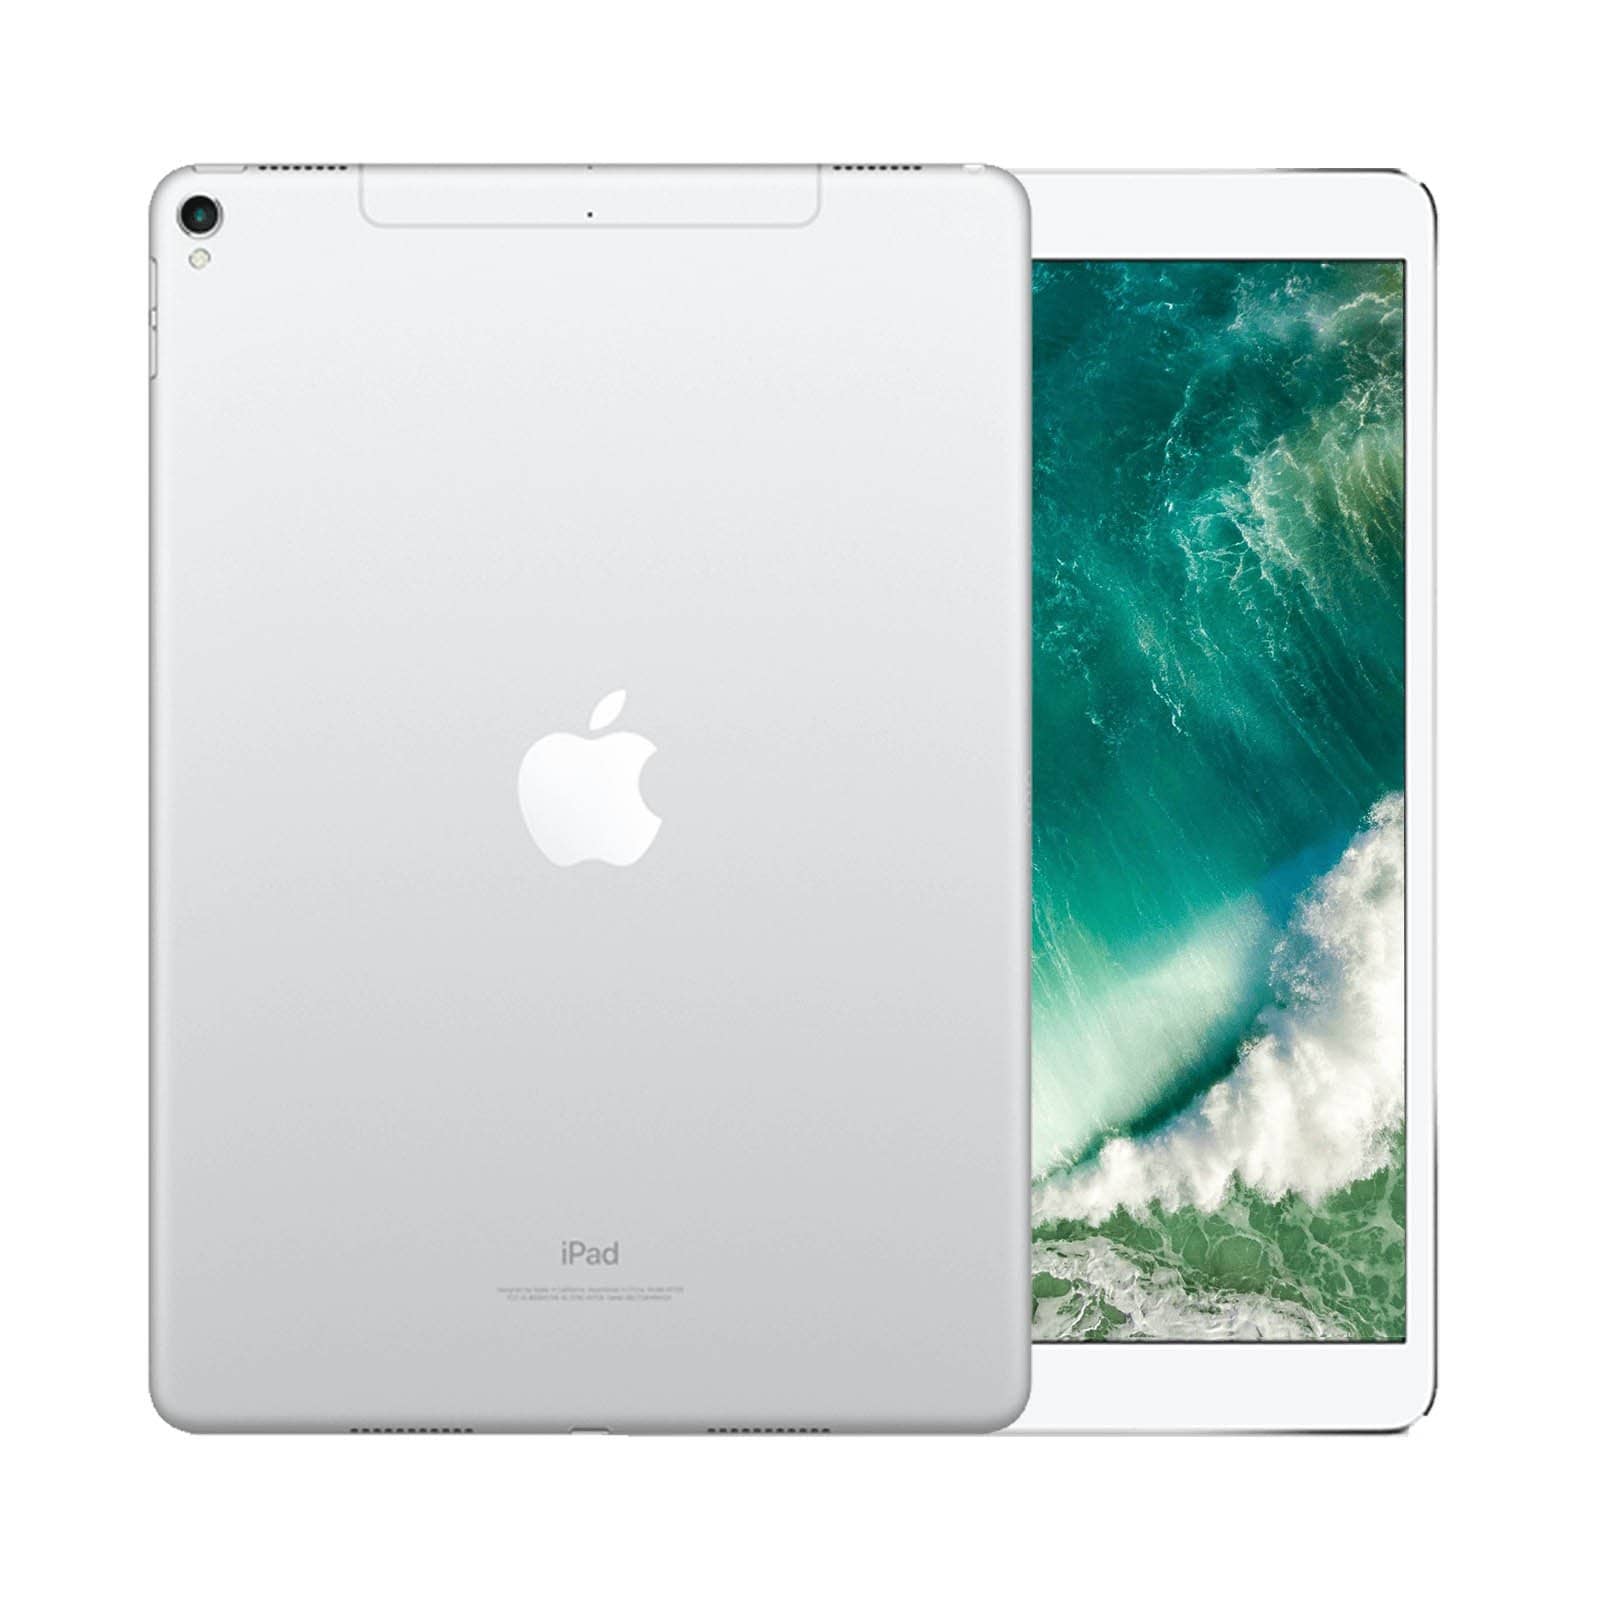 iPad Pro 10.5 Inch 512GB Silver Pristine - Unlocked 512GB Silver Pristine